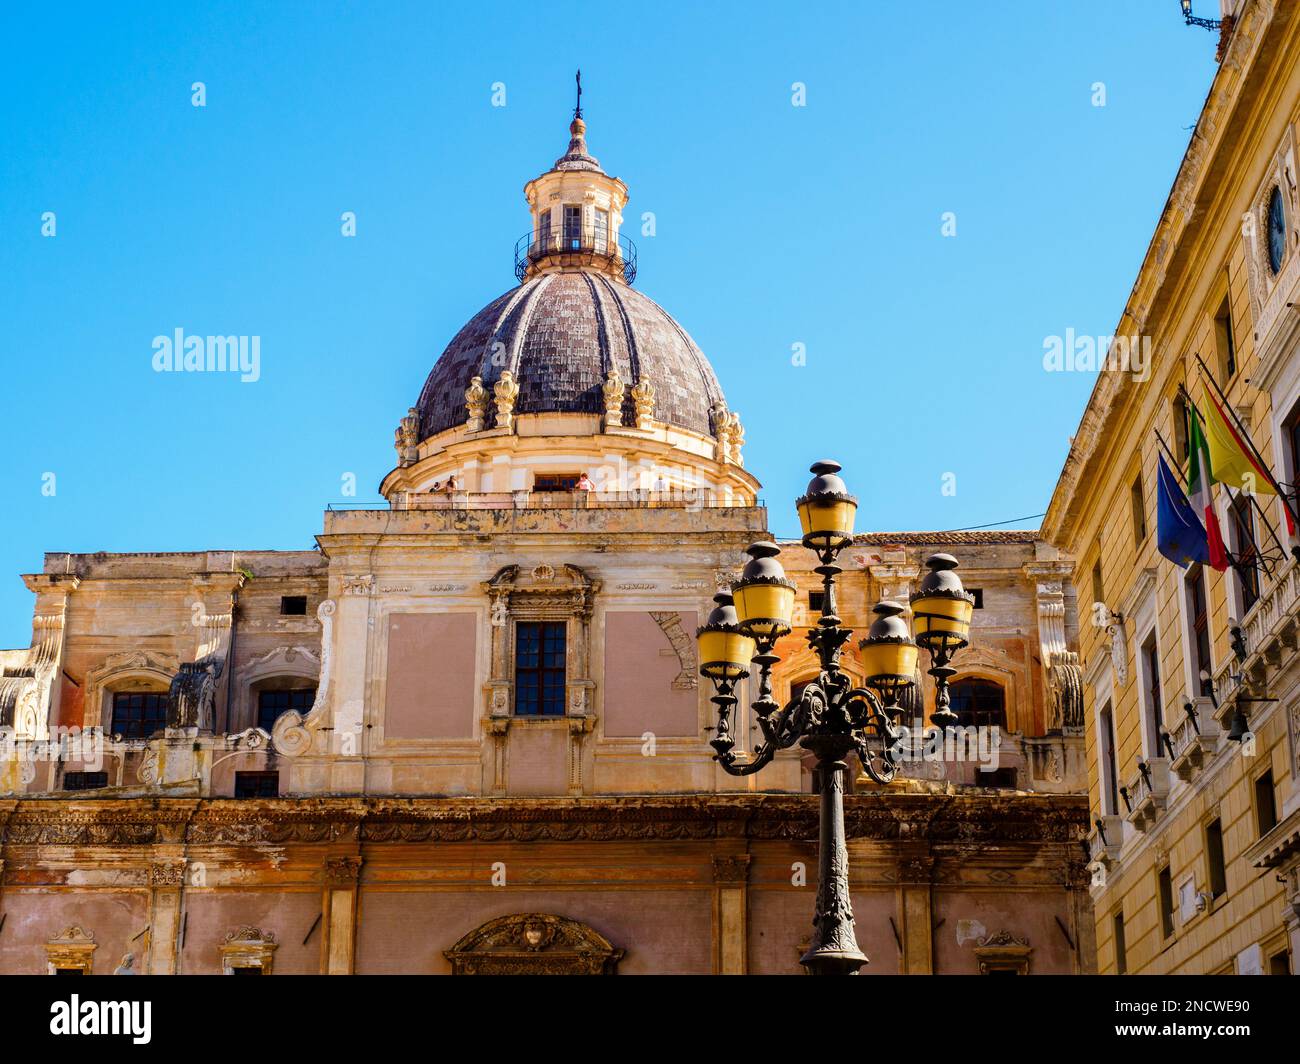 La cupola della chiesa di Santa Caterina inm Palermo - Sicilia, Italia Foto Stock